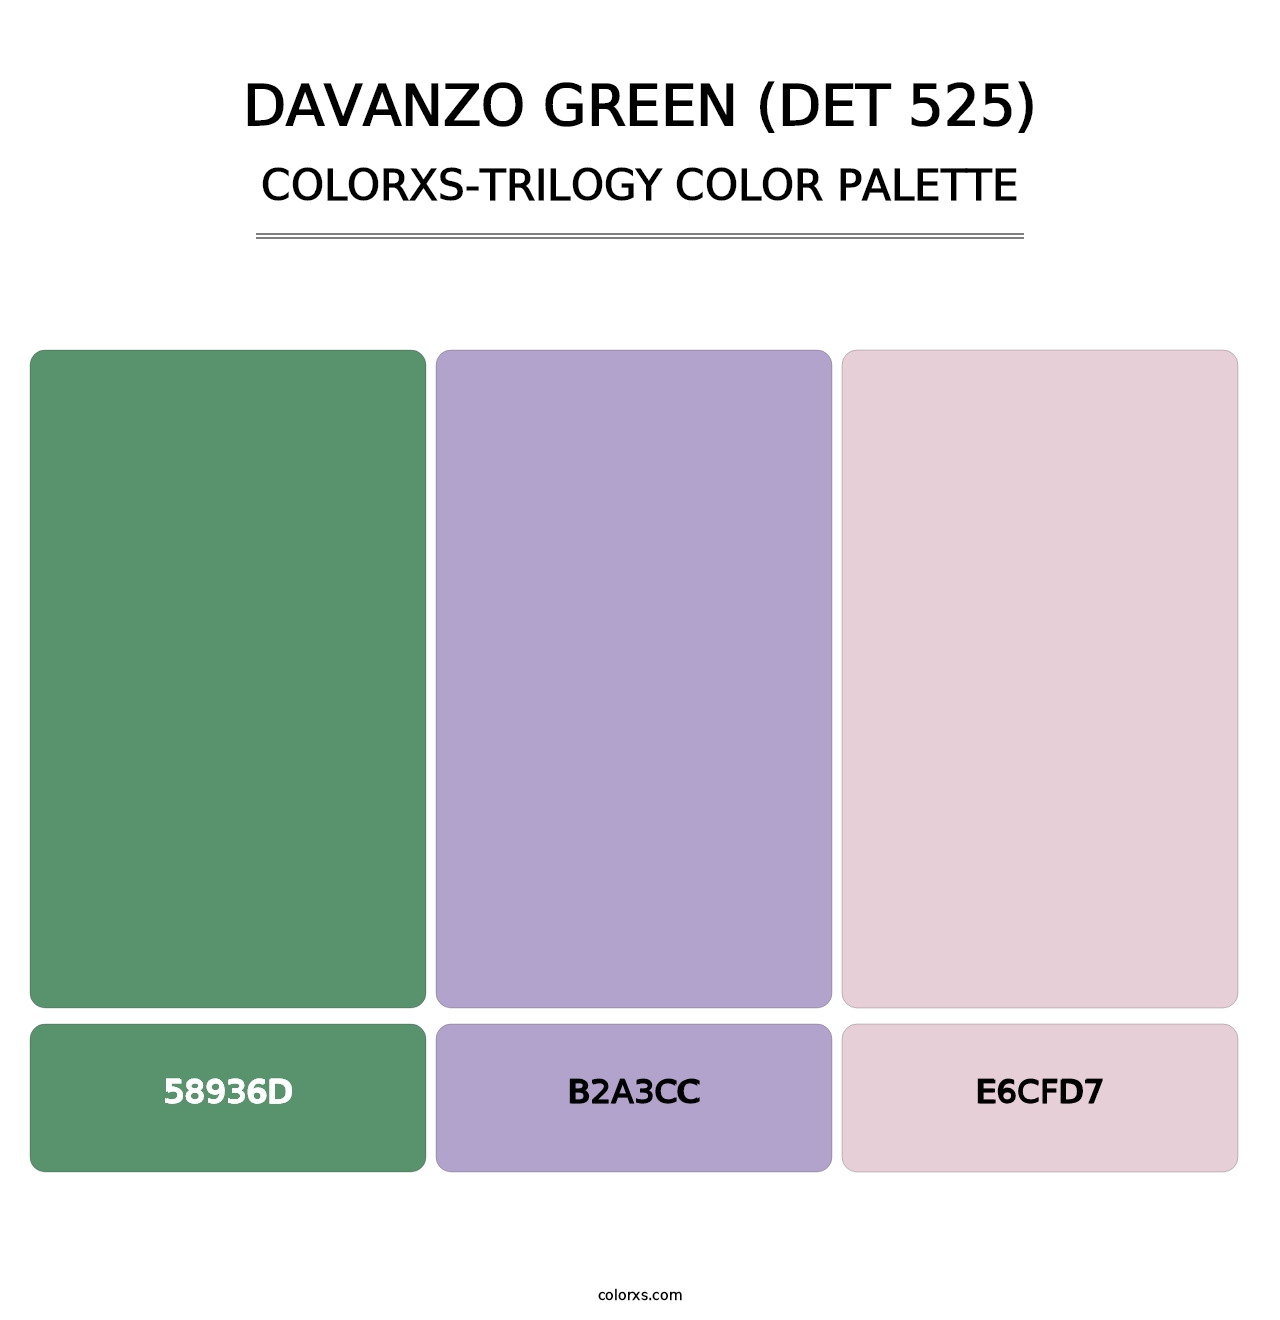 DaVanzo Green (DET 525) - Colorxs Trilogy Palette